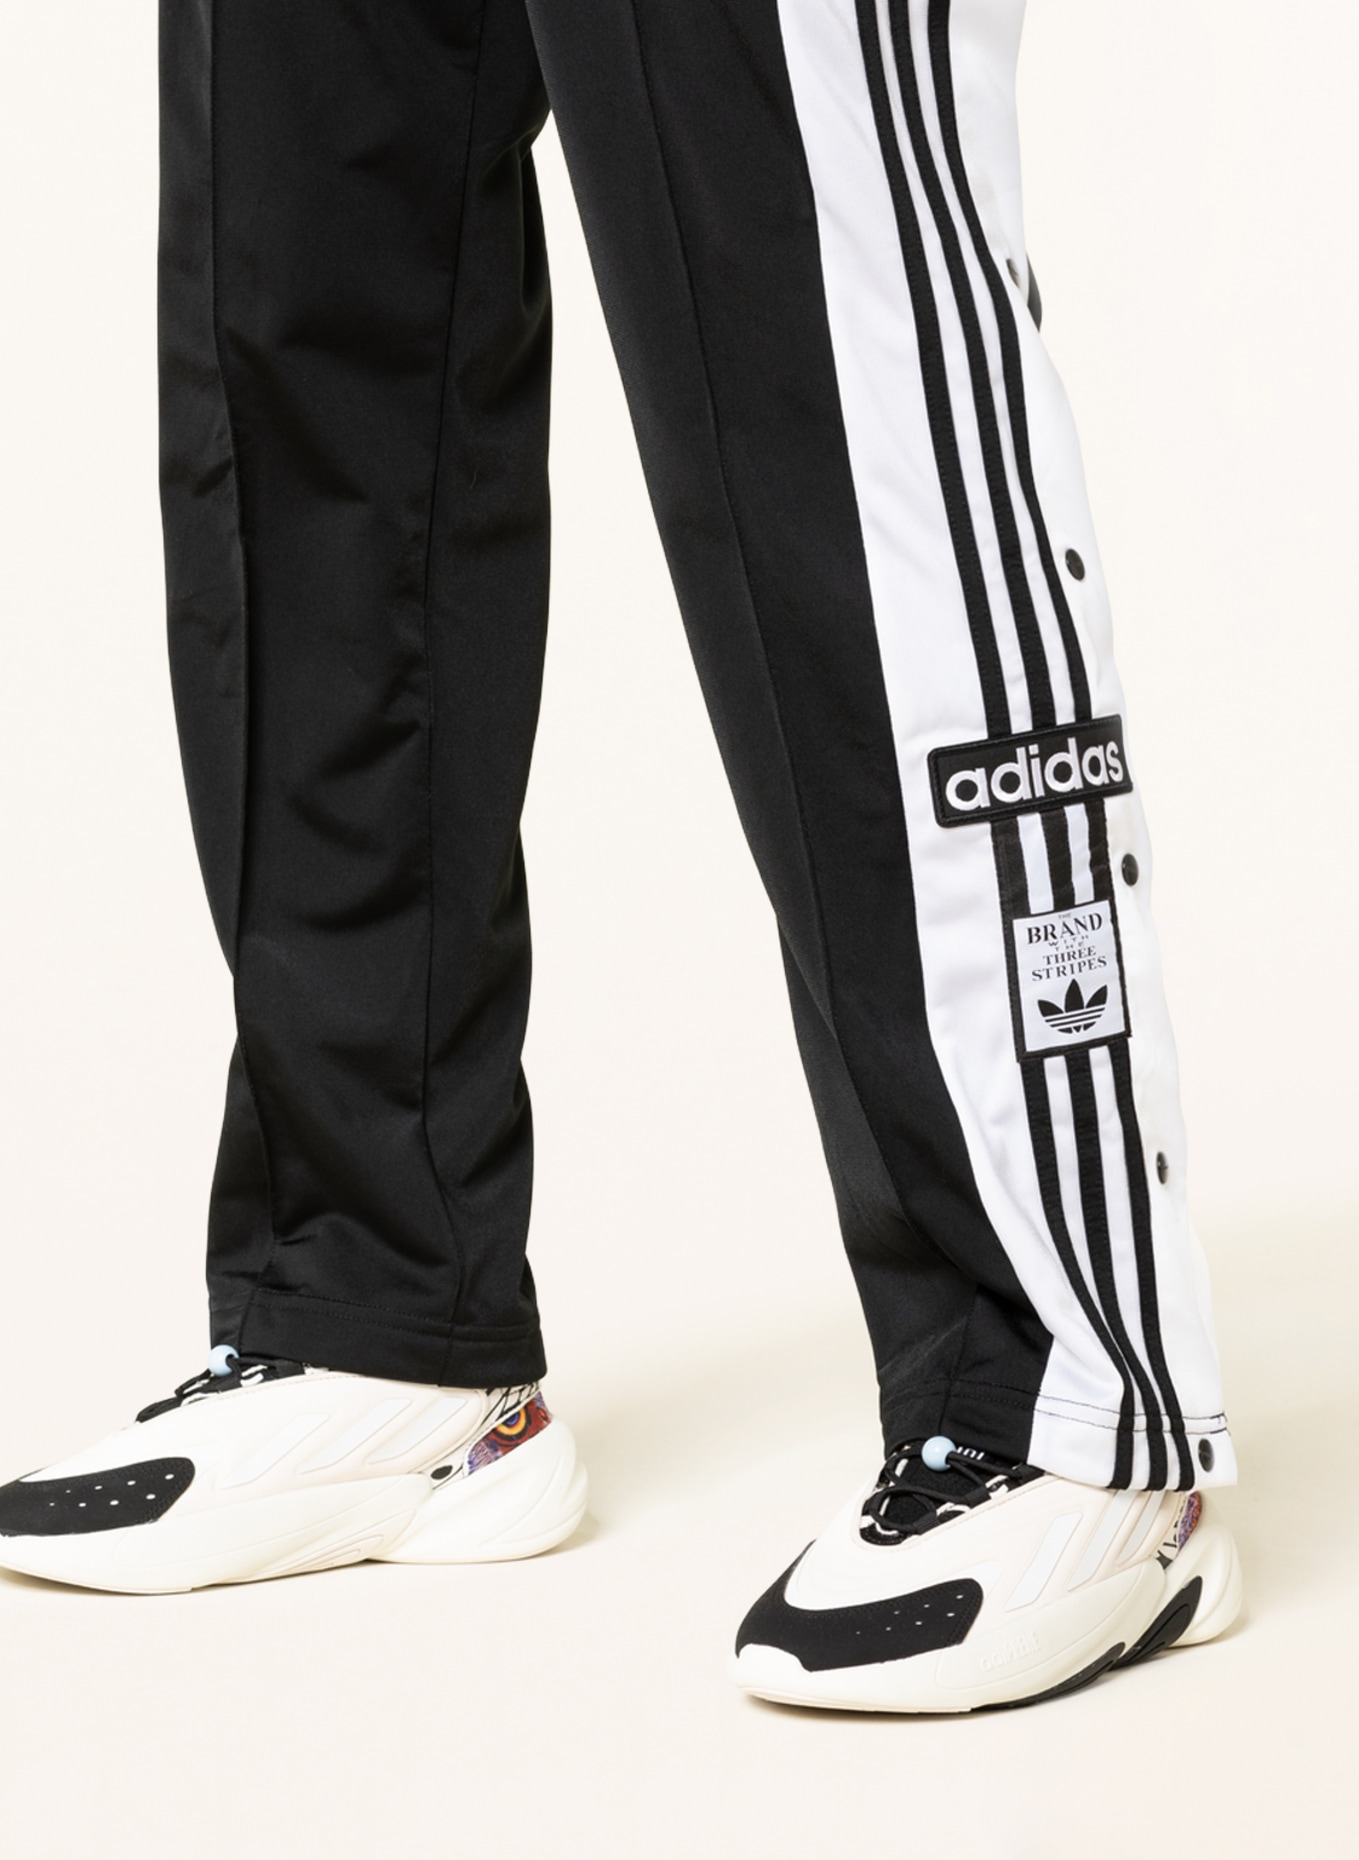 adidas Originals Training pants ADICOLOR CLASSICS ADIBREAK in black/ white |